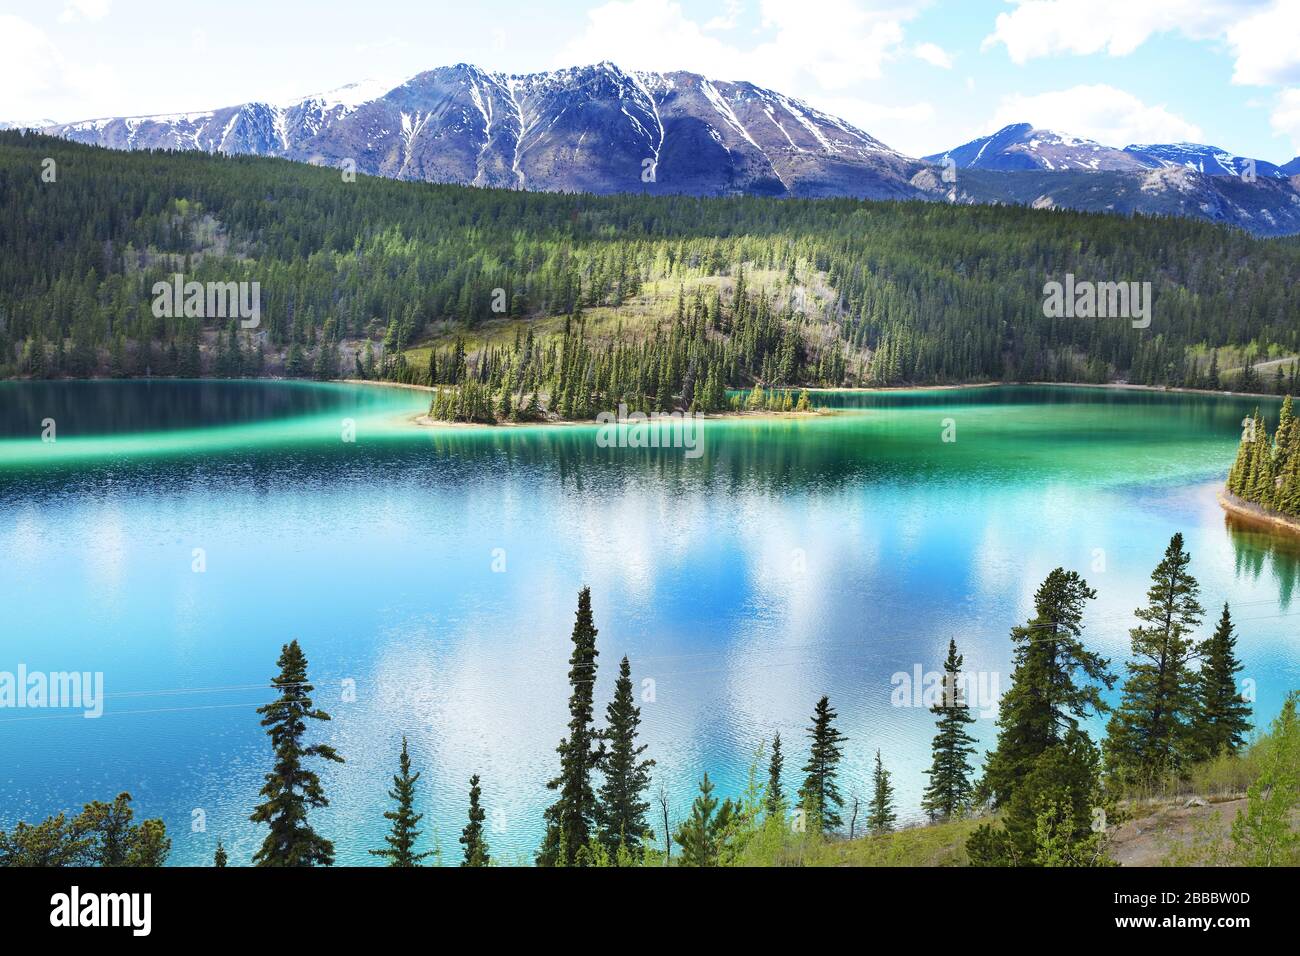 Der Smaragdsee wird aufgrund der grünen Färbung seines Wassers, die sich aus einer Mischung aus Ton und Kalziumkarbonat auf dem flachen Boden ergibt, so benannt. 12 km nördlich von Carcross, Yukon Territory, Kanada Stockfoto